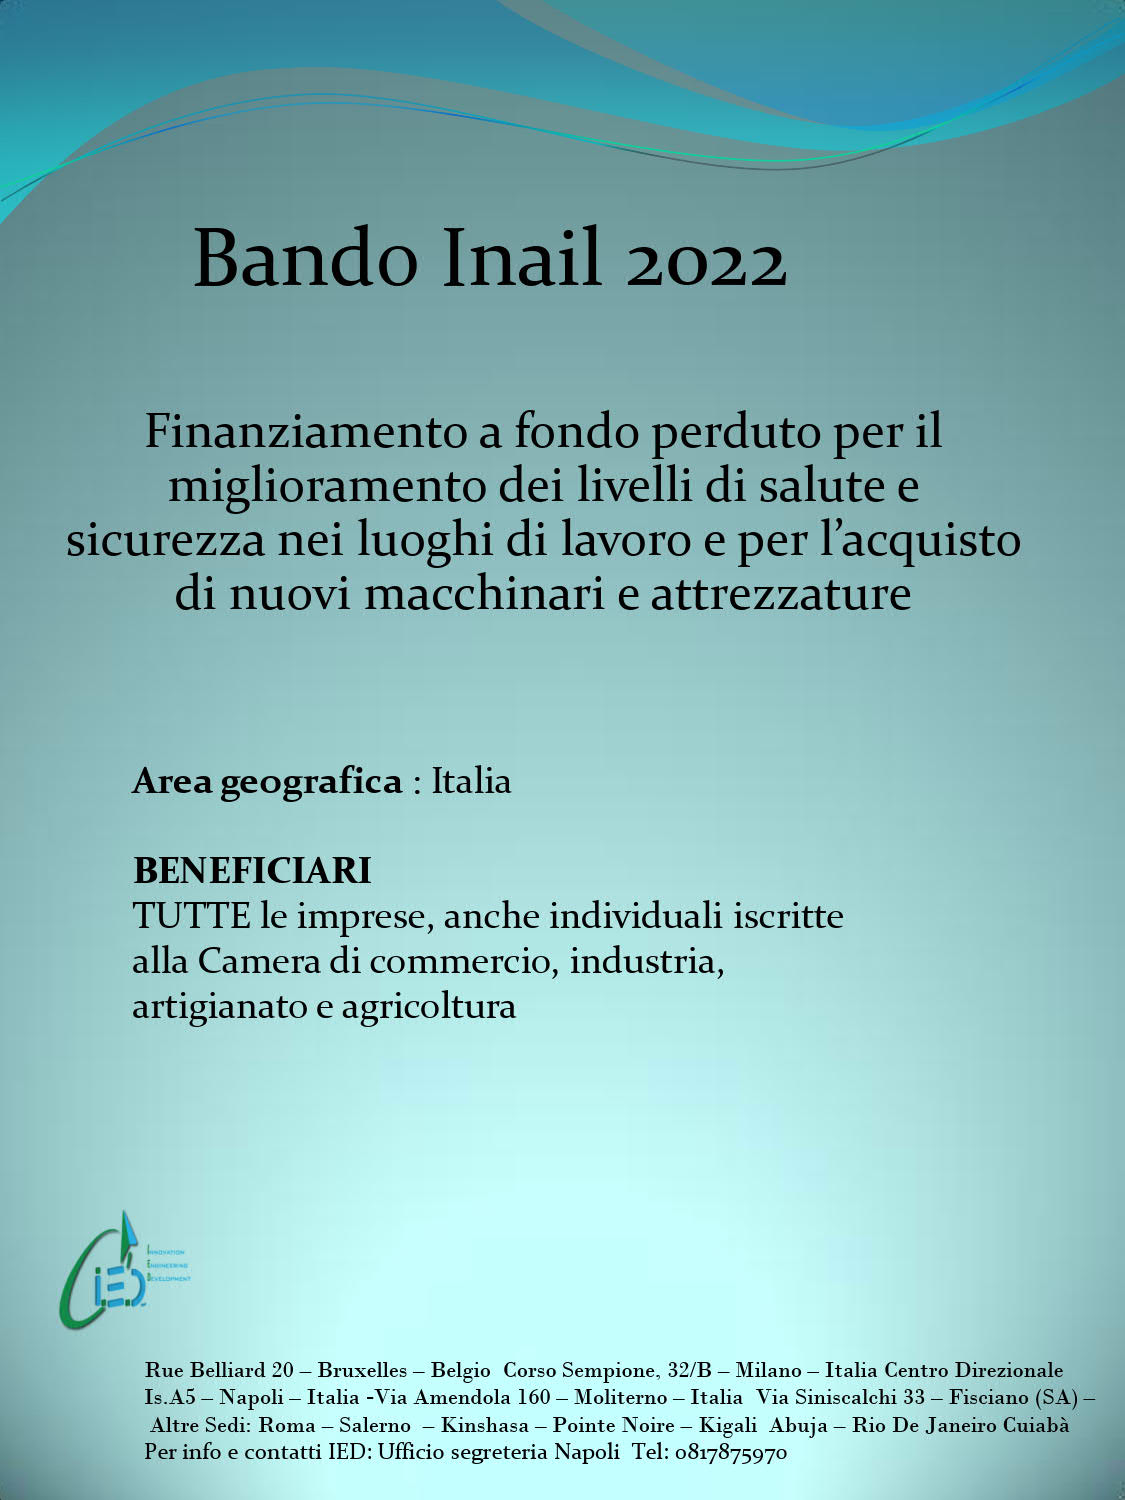 BANDO INAIL 2022 - Gruppo Cestari